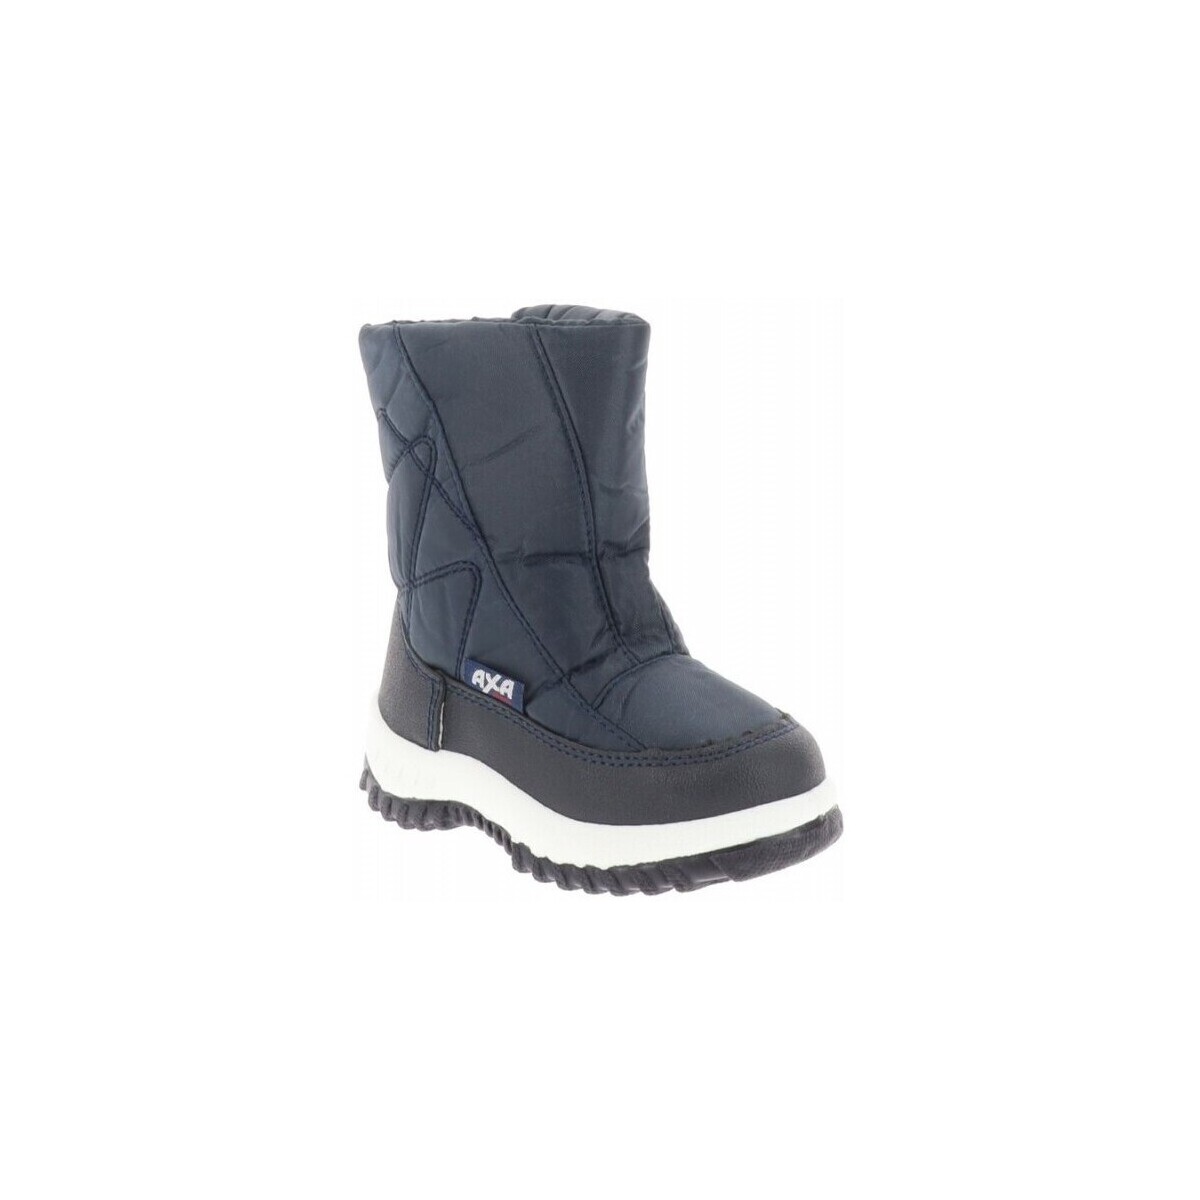 Schuhe Jungen Schneestiefel Axa -64522A Blau